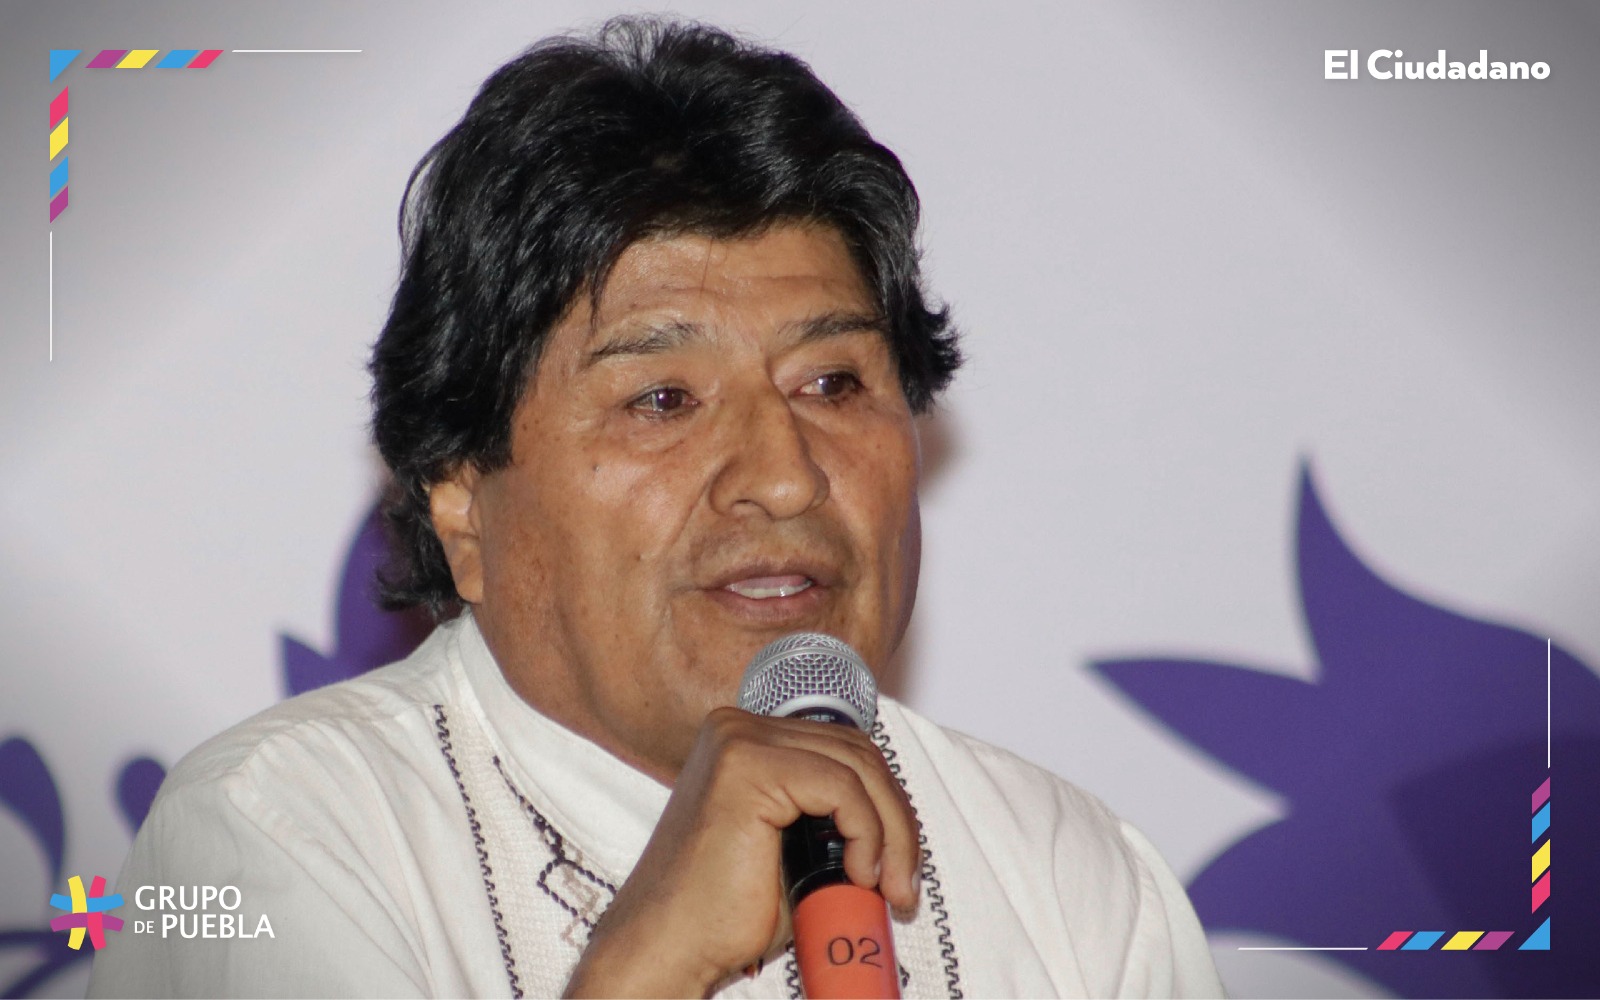 Los pueblos buscamos la paz pero con justicia social: Evo Morales. EN VIVO